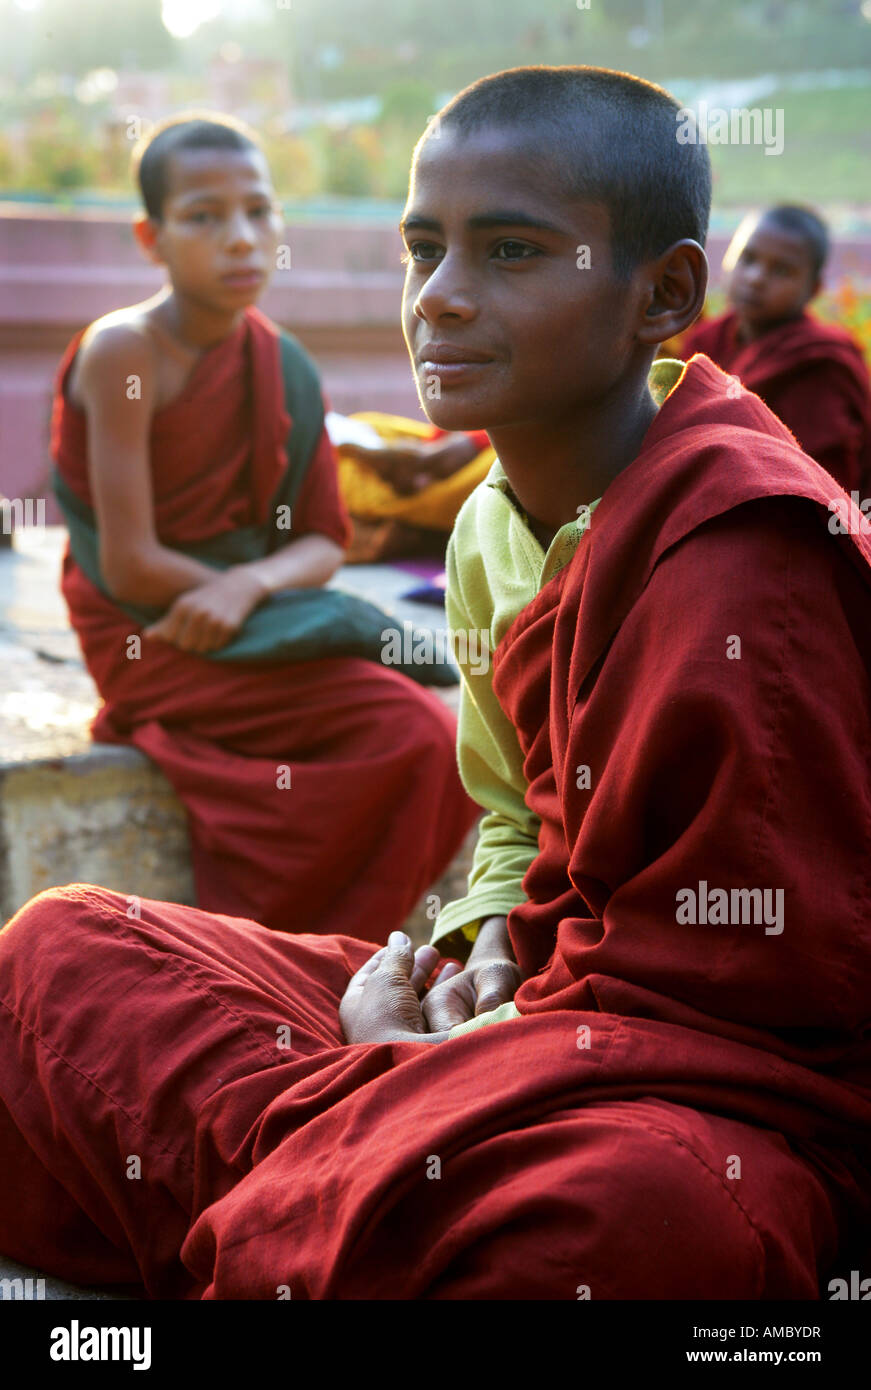 L'Inde, Bodhgaya : les jeunes moines bouddhistes, Temple de la Mahabodhi, le lieu de l'Eveil du Bouddha Banque D'Images